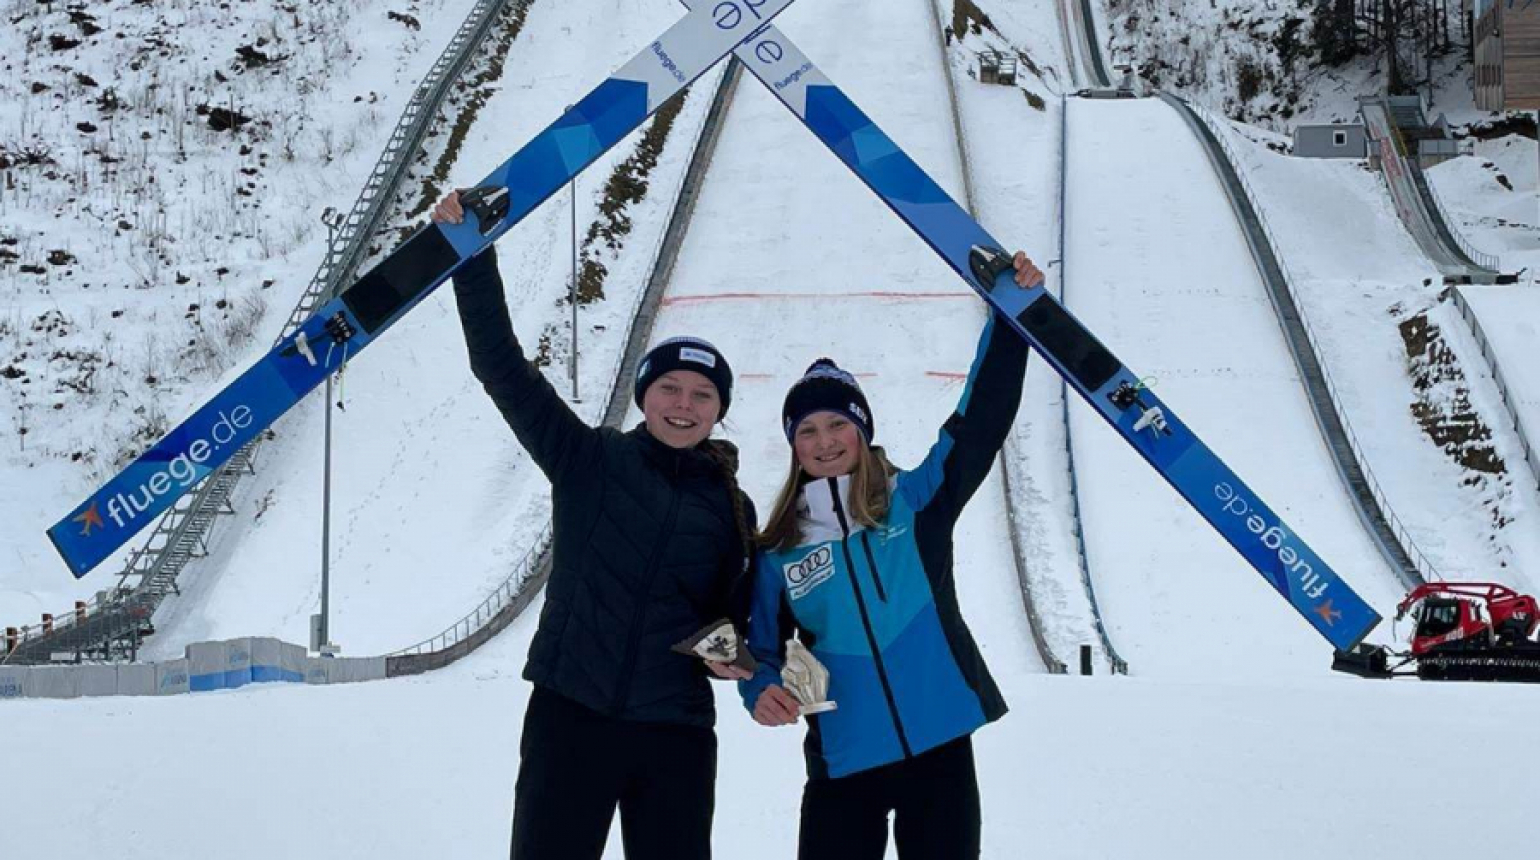 Alpen Cup: Indráčková na stupních vítězek, pěkný výsledek urvala i Ulrichová. Mezi muži na bodech Škarka